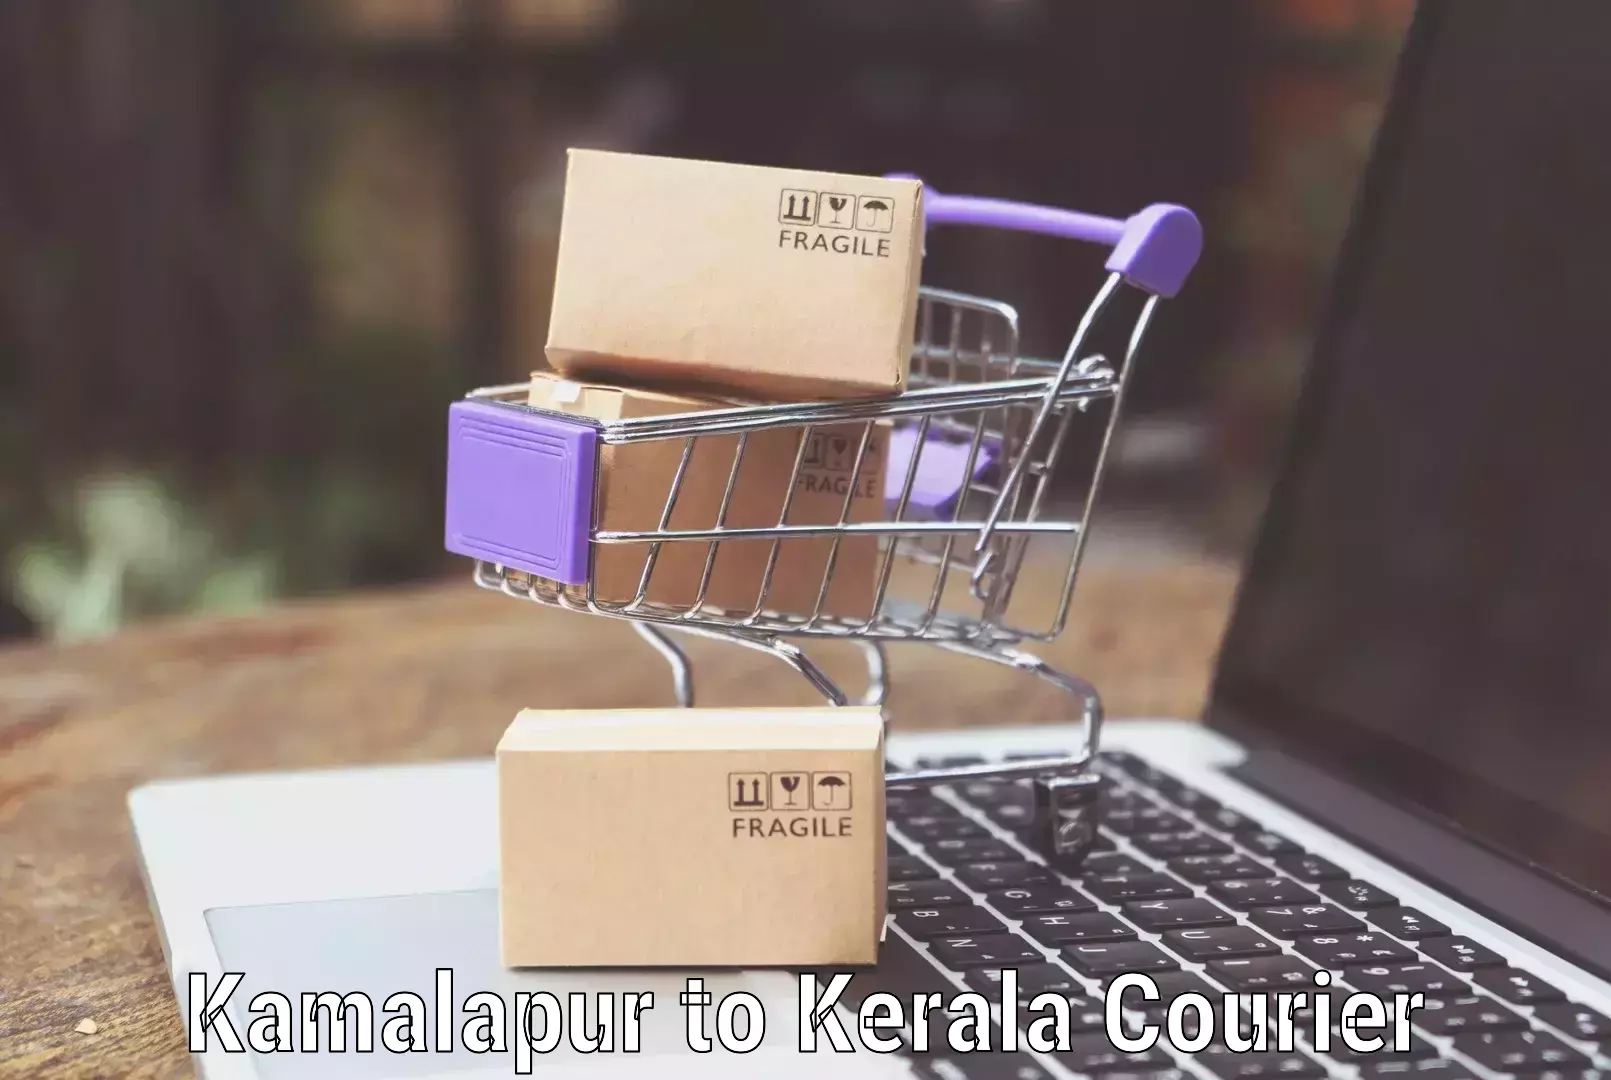 Baggage delivery optimization Kamalapur to Ottapalam